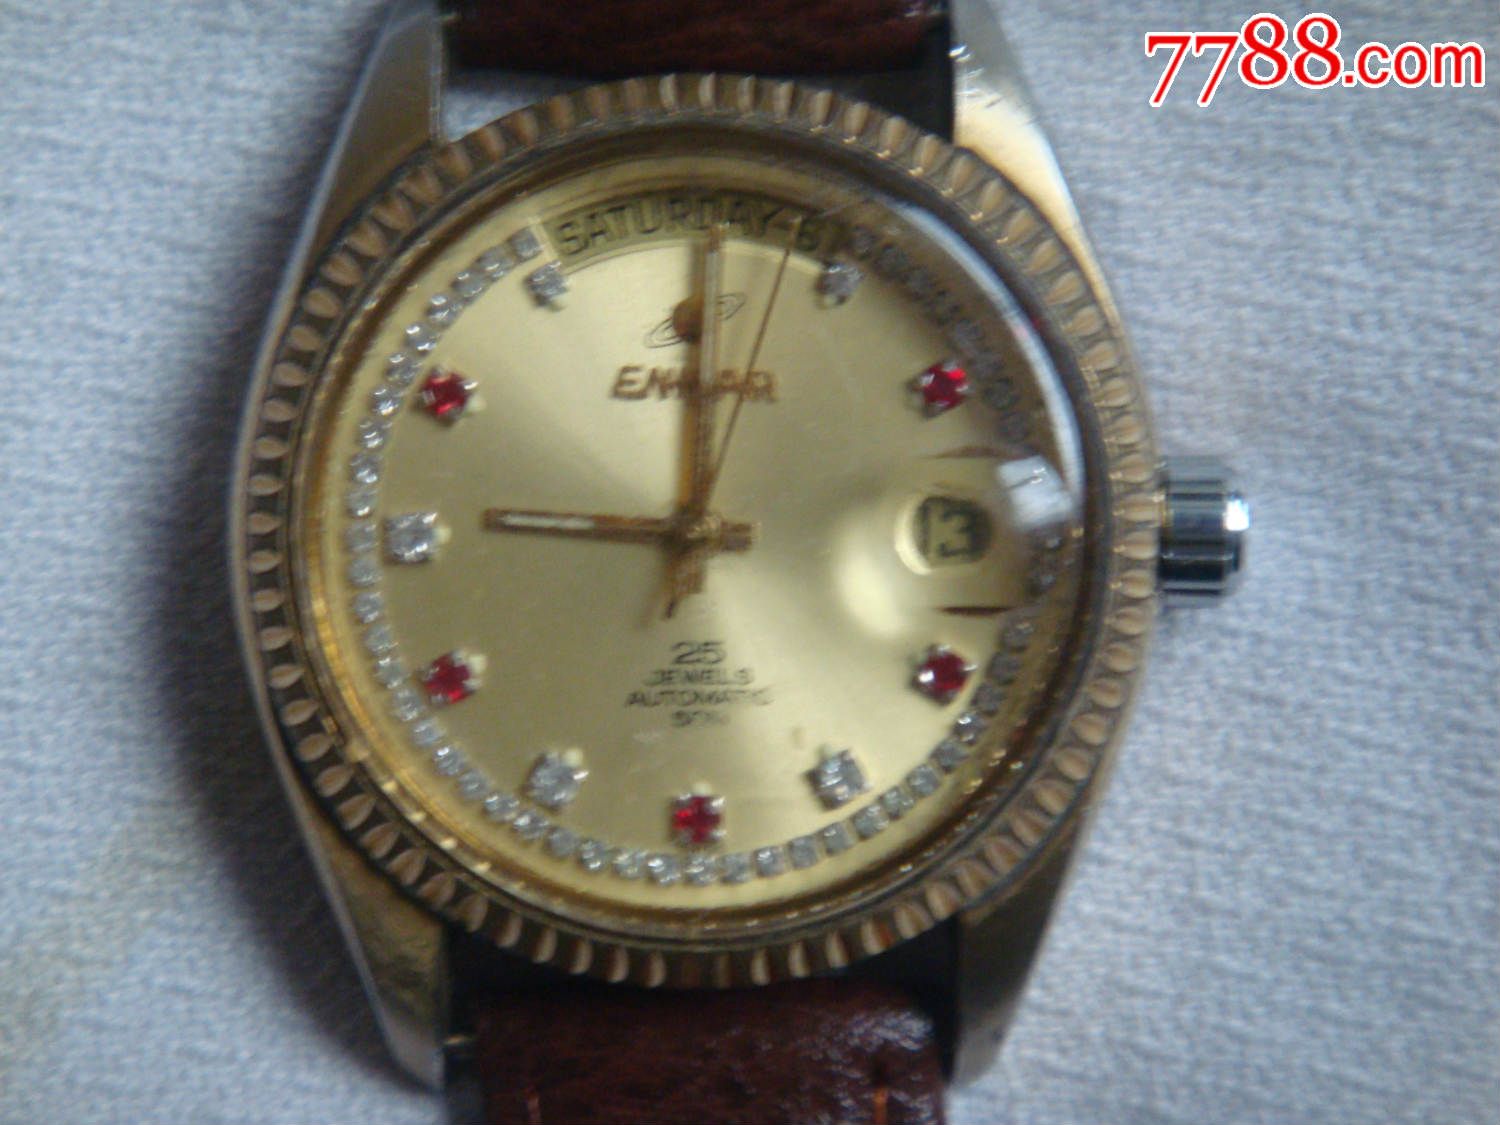 英纳格2169自动表,手表\/腕表,机械,年代不详,英